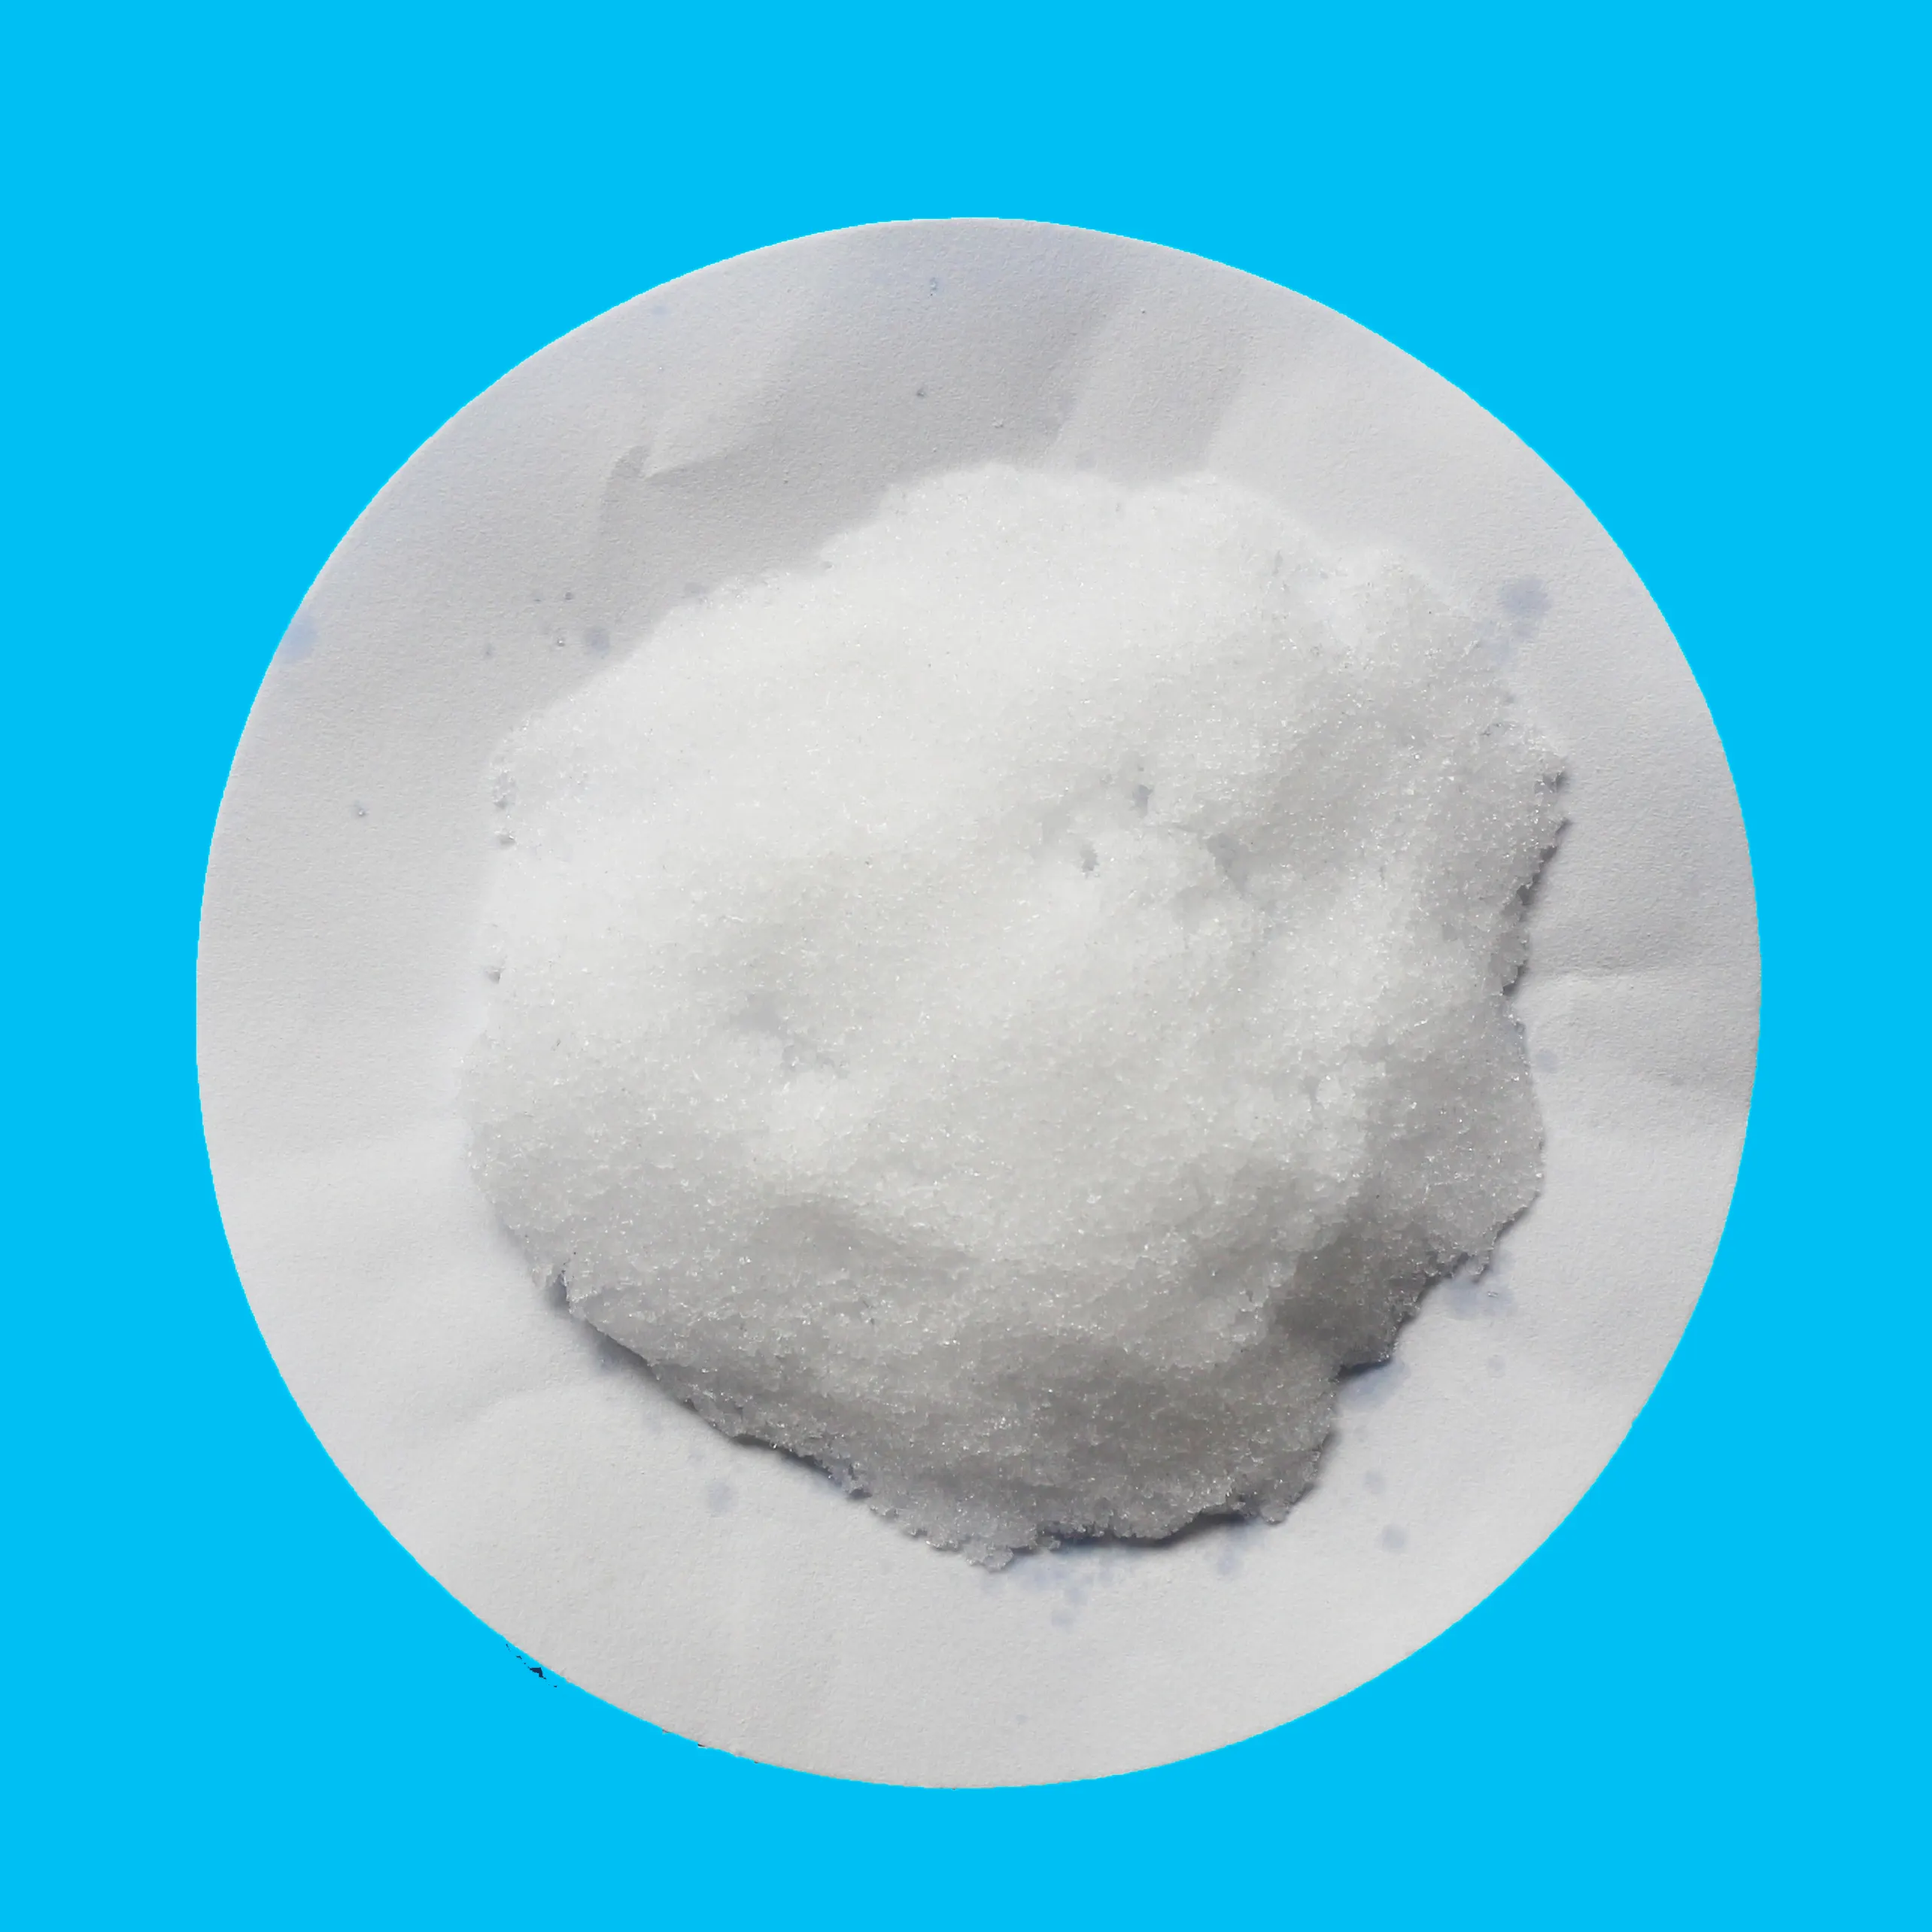 Cristallo bianco USP di alta qualità,/Ph. Eur/ BP/FCC, cloruro di magnesio esaidrato